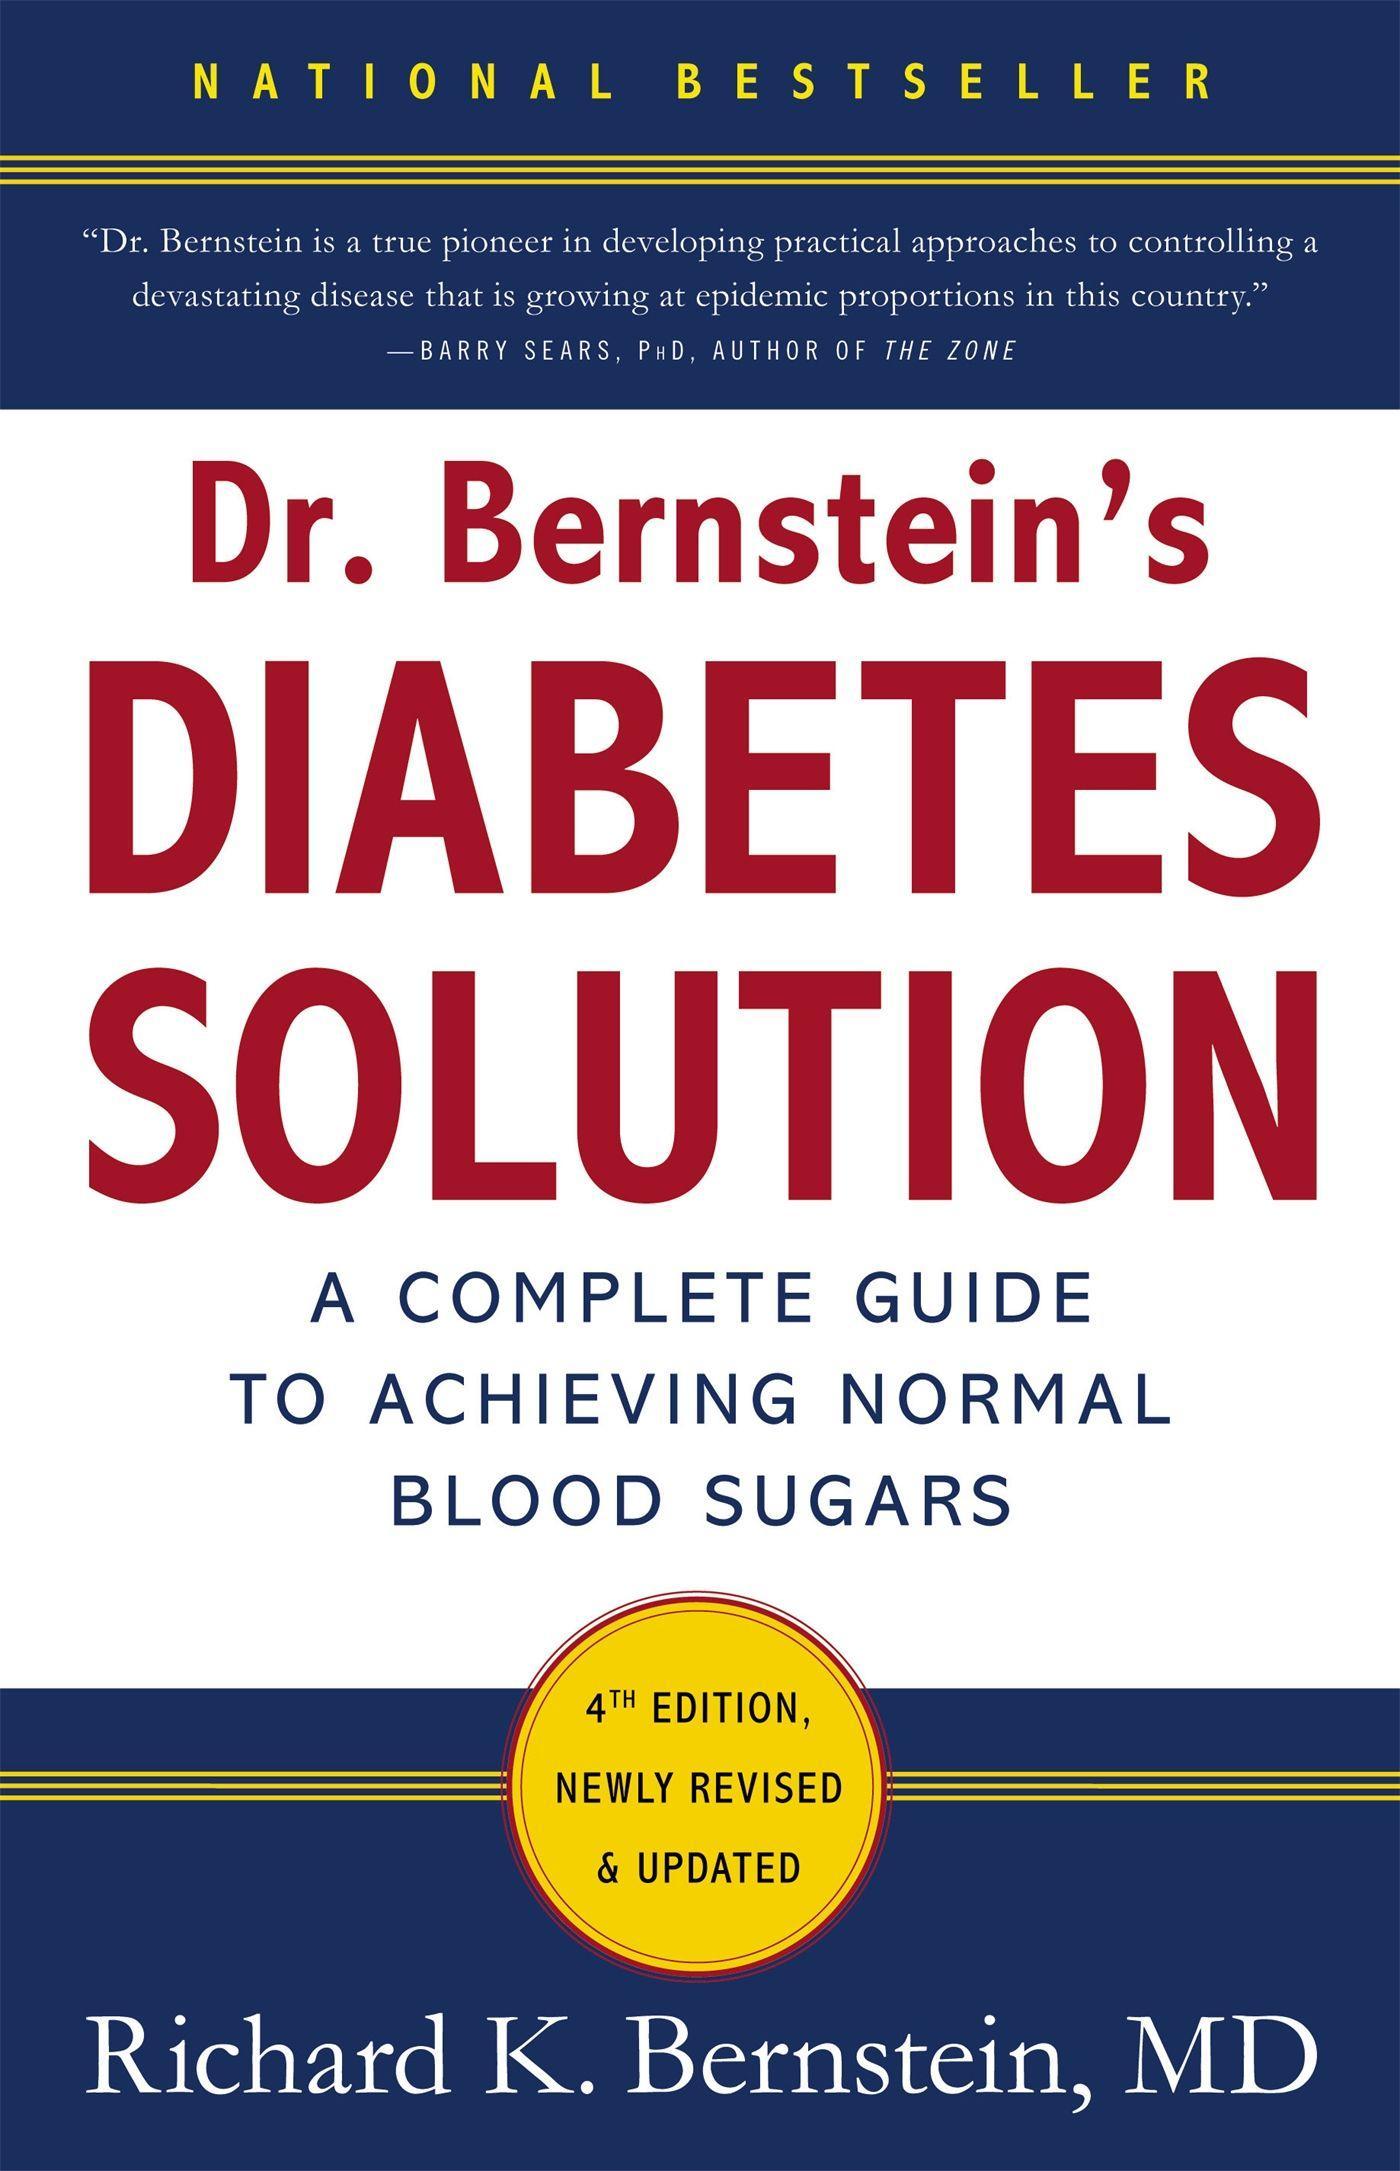 Dr Bernstein's Diabetes Solution / A Complete Guide To Achieving Normal Blood Sugars, 4th Edition / Richard K. Bernstein / Buch / Gebunden / Englisch / 2011 / Little, Brown & Company - Bernstein, Richard K.